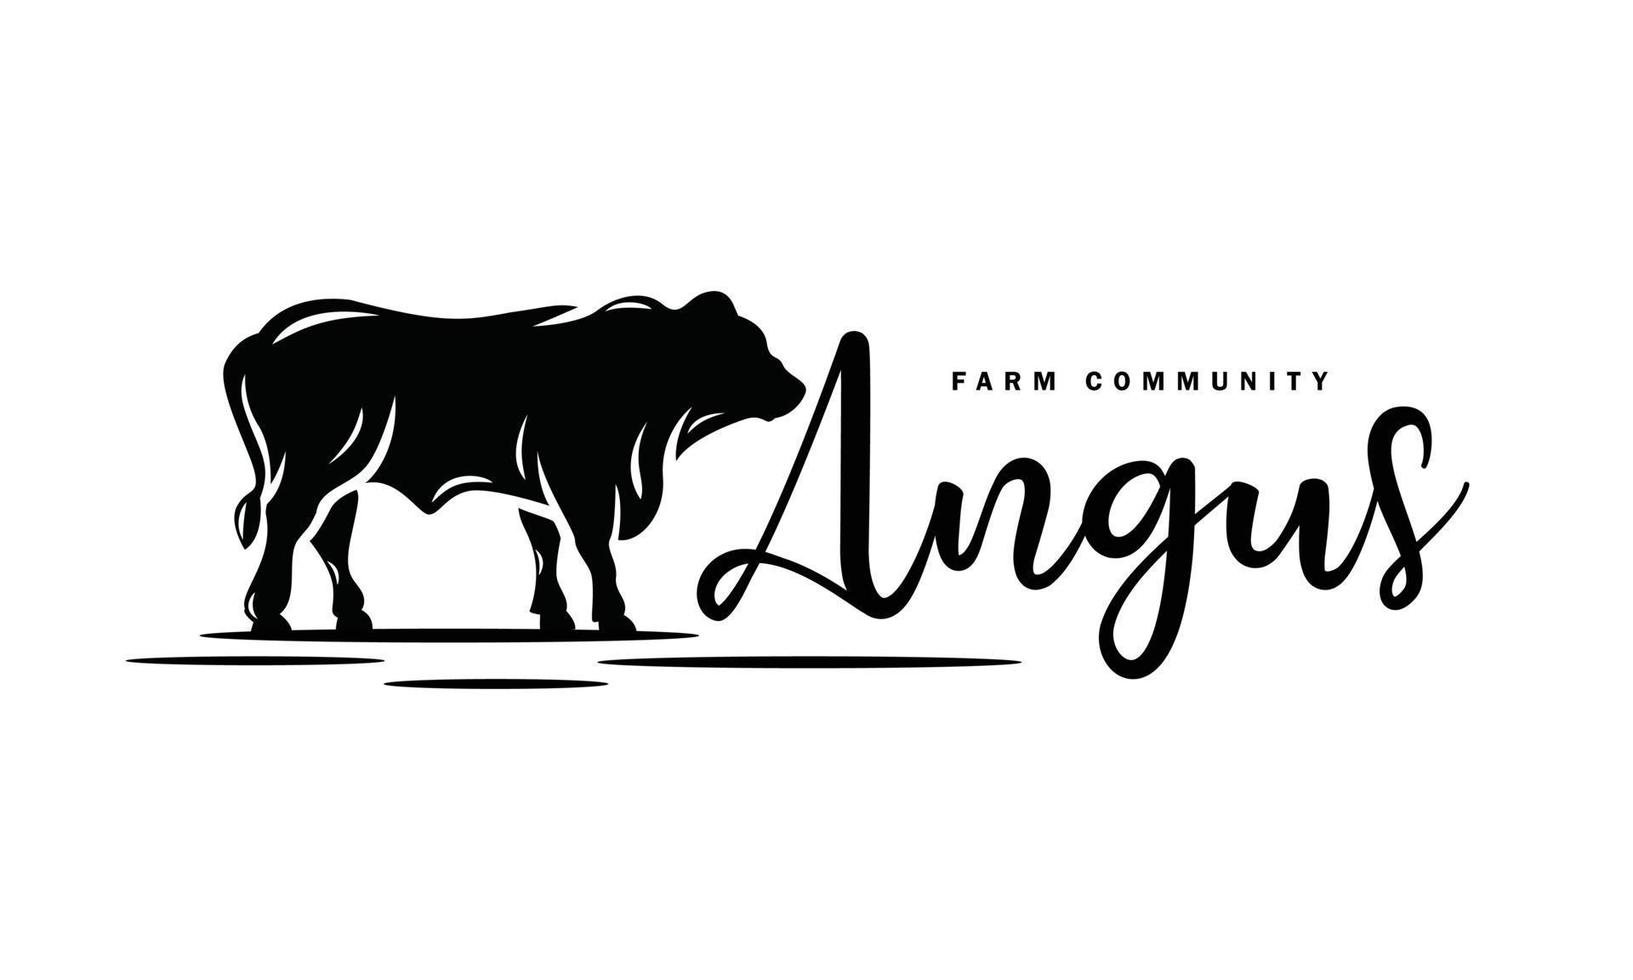 angus farm, boskap, boskapsgemenskap logotypdesign - isolerad vektorillustration på vit bakgrund - siluettkaraktär, ikon, symbol, märke, emblem vektor